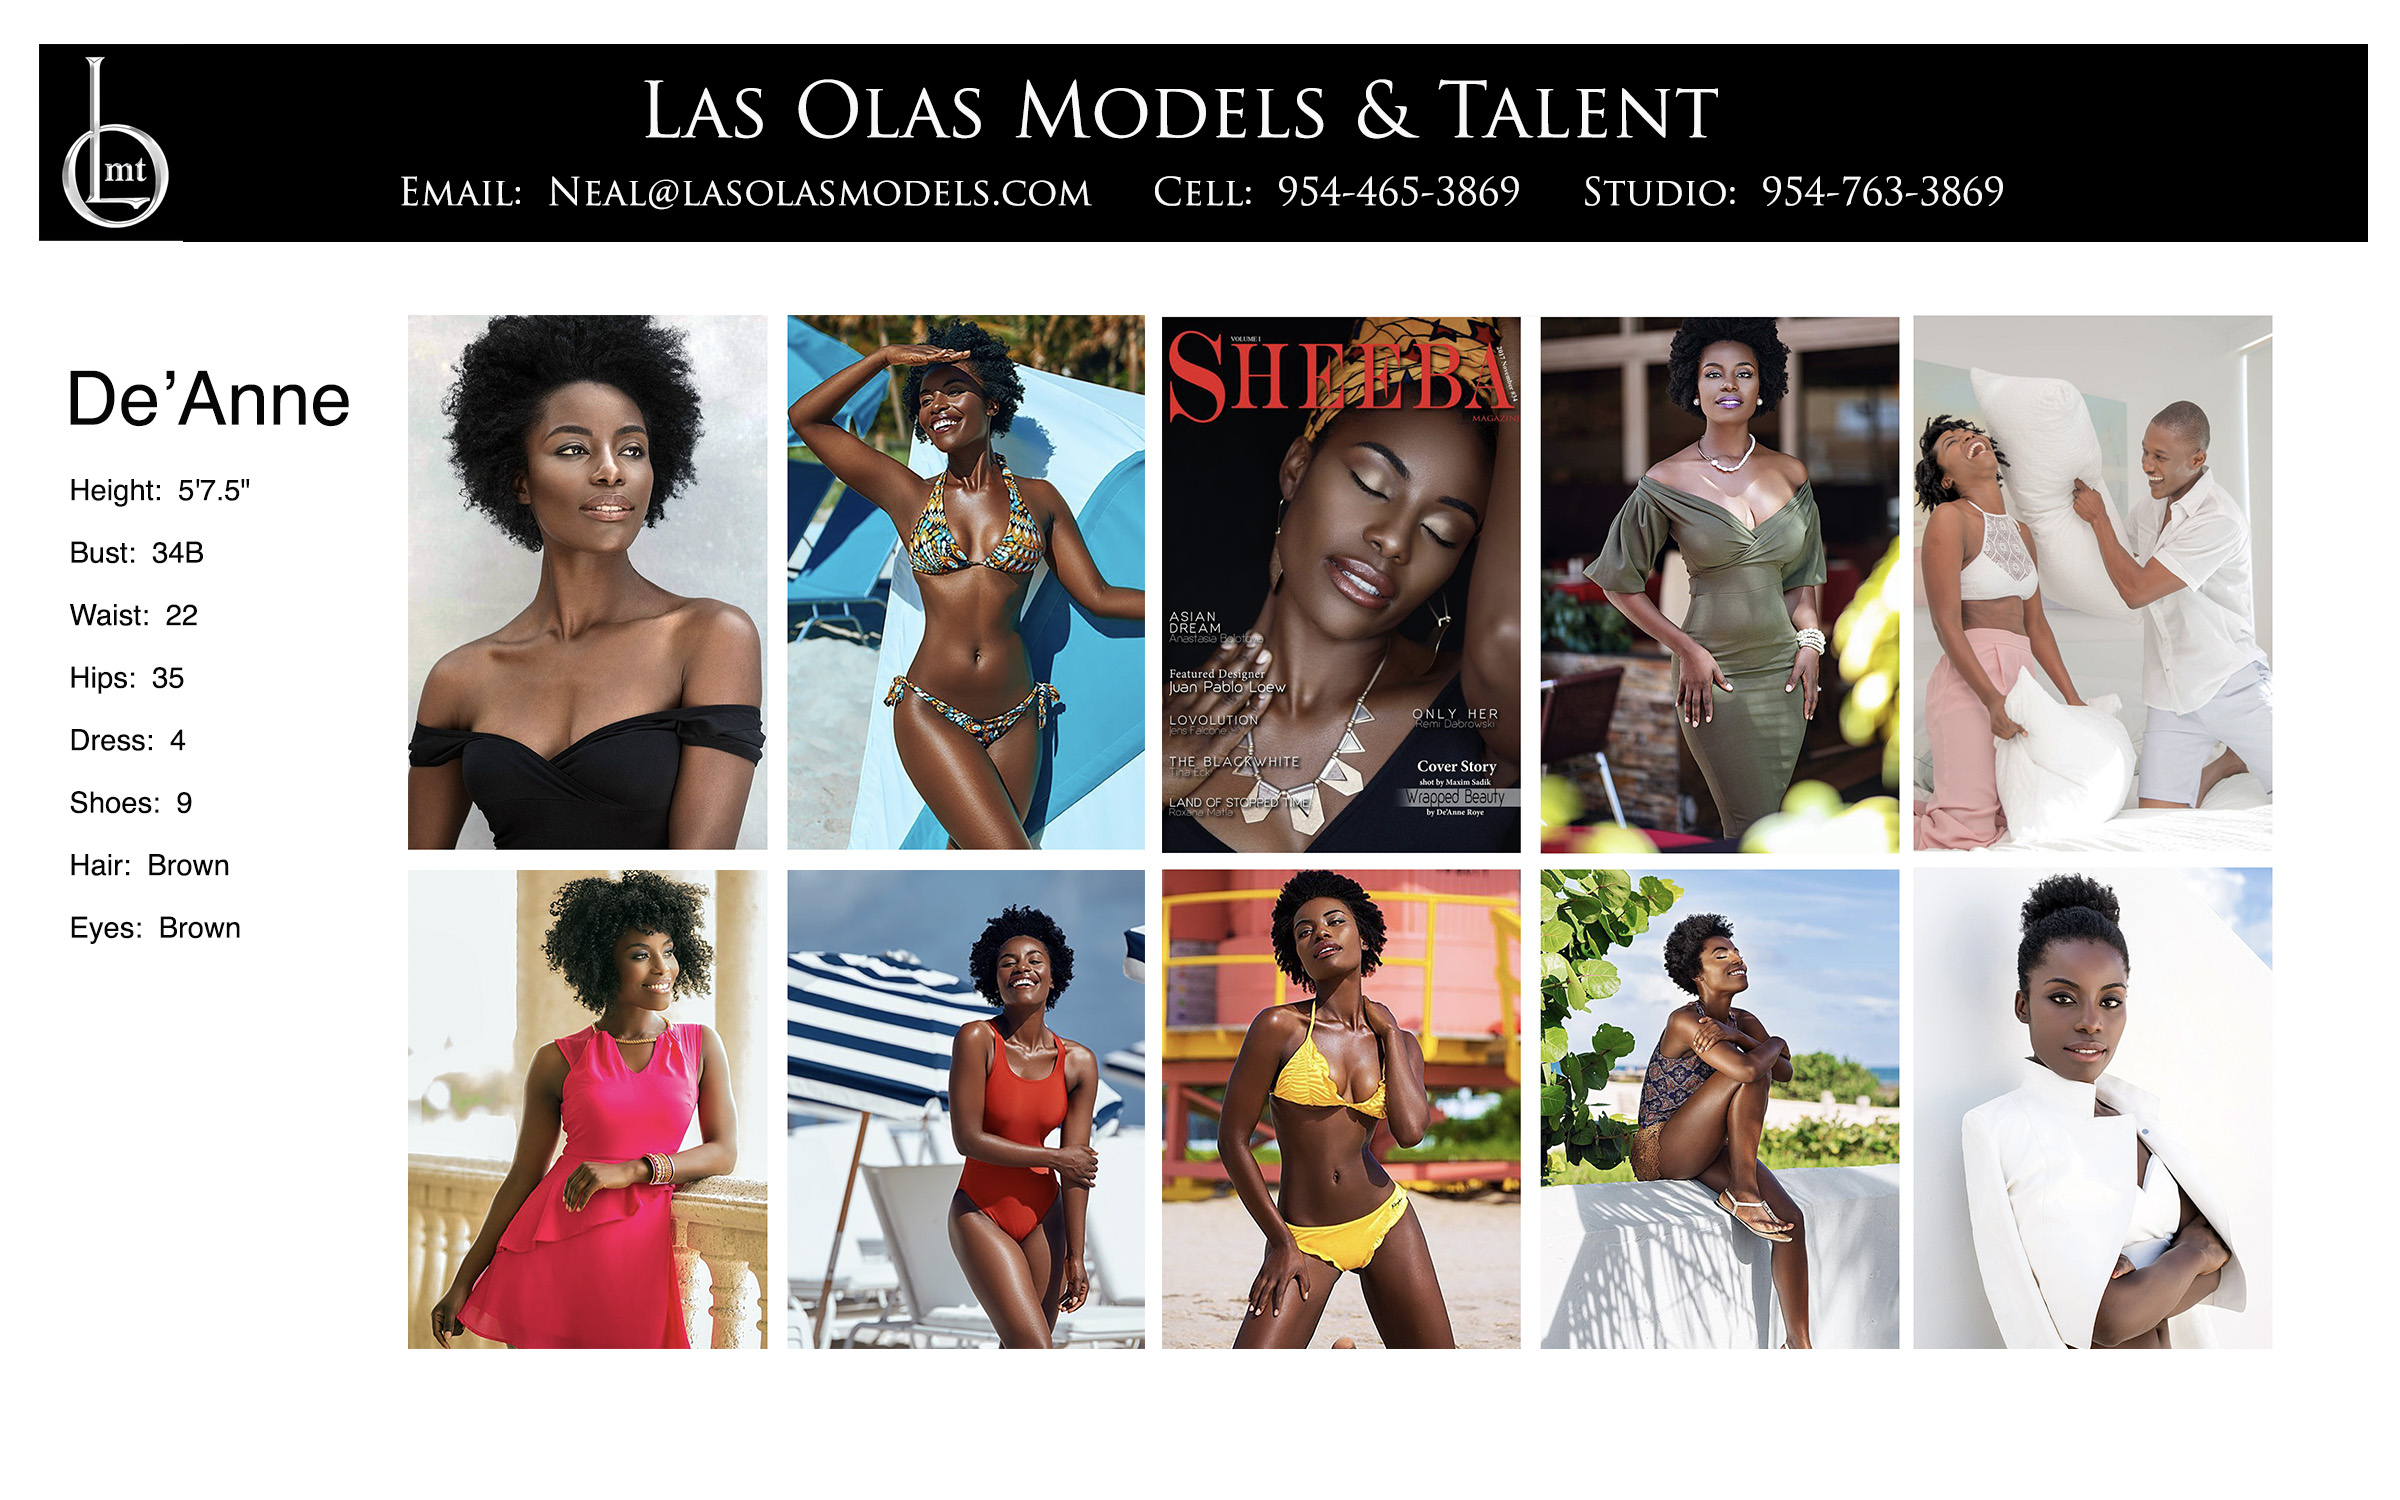 Models Fort Lauderdale Miami South Florida - Print Video Commercial Catalog - Las Olas Models & Talent - De'Anne Comp